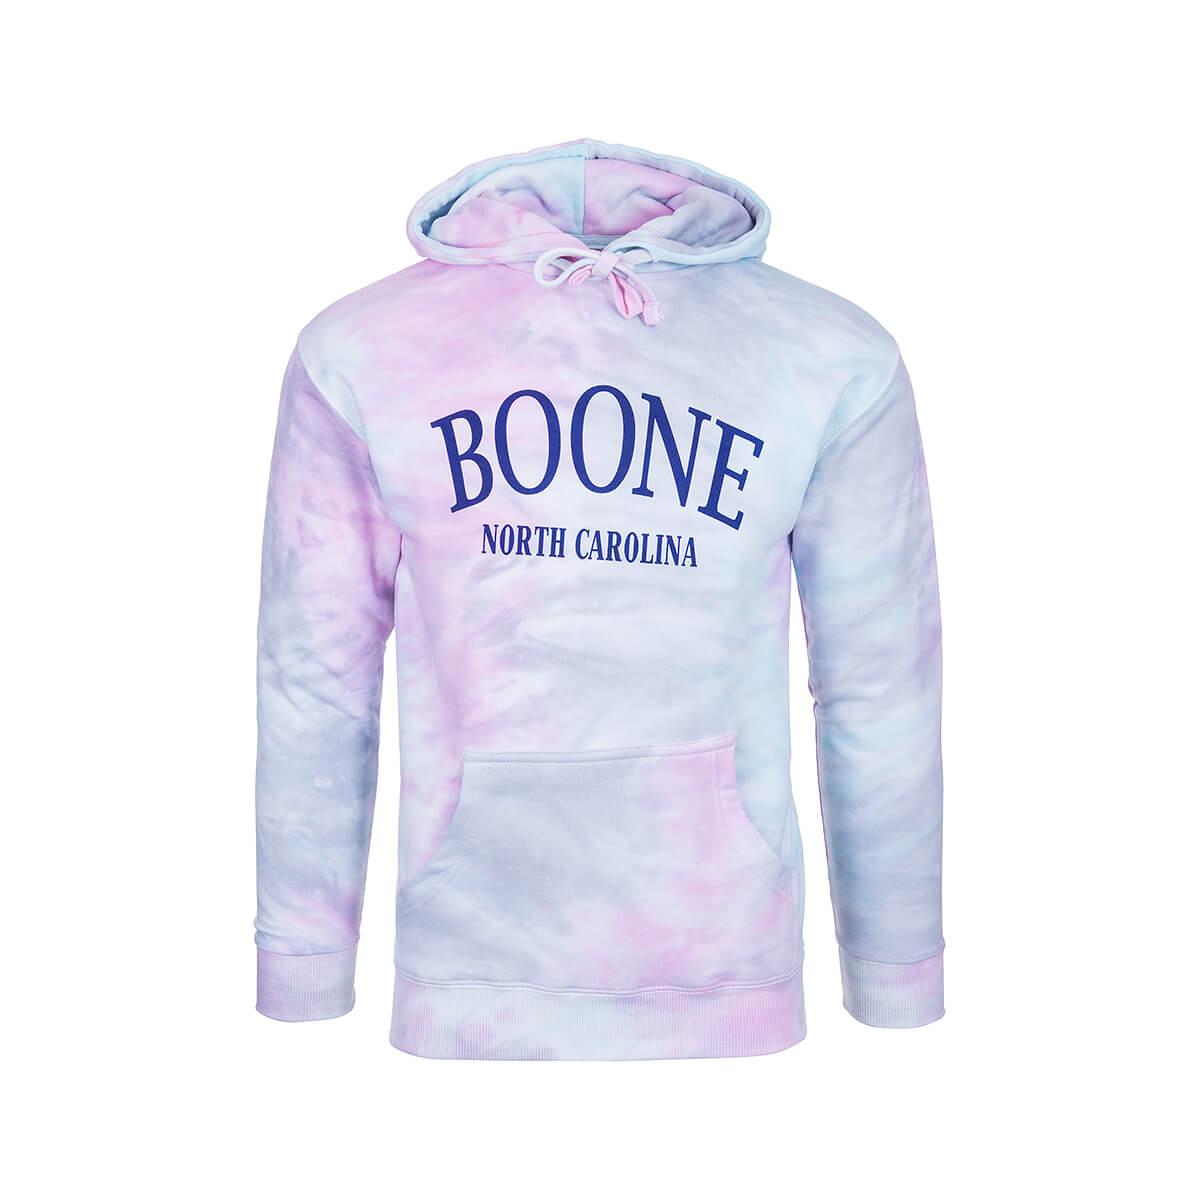  Boone Mast General Store Tie Dye Hoodie